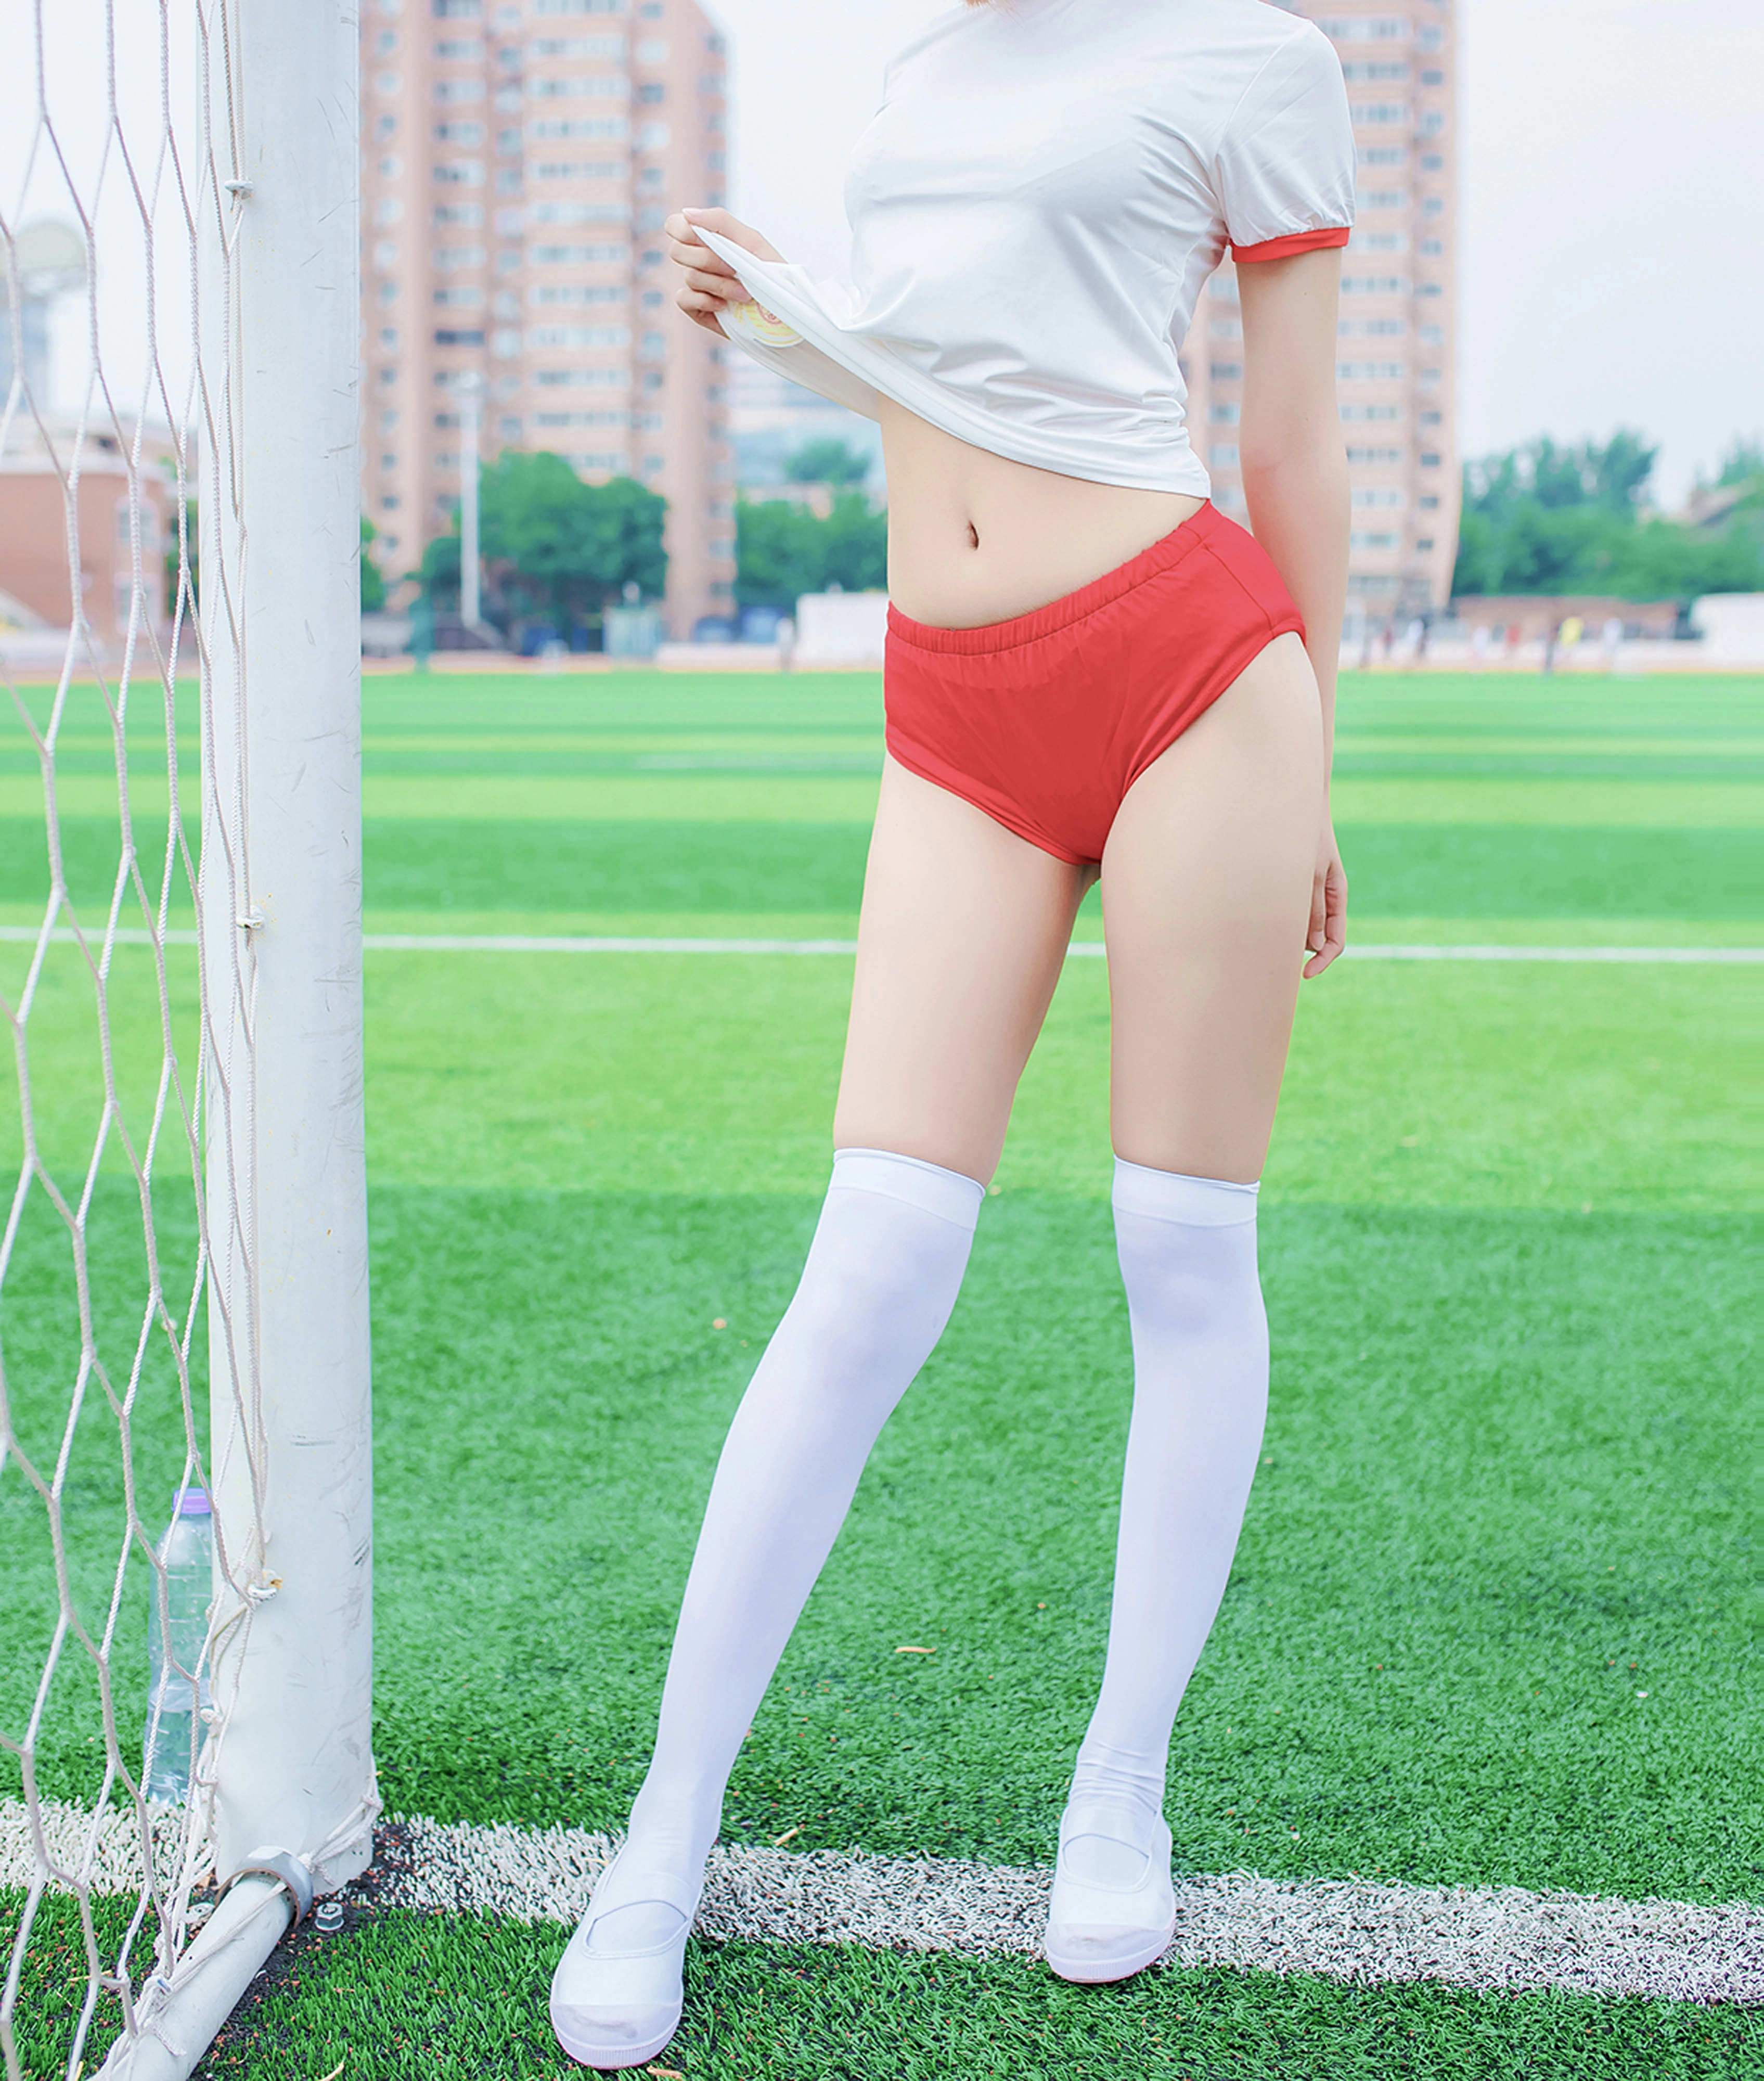 [风之领域]NO.142 体育场上的少女 白色短袖与红色安全短裤加白色丝袜美腿性感私房写真集,